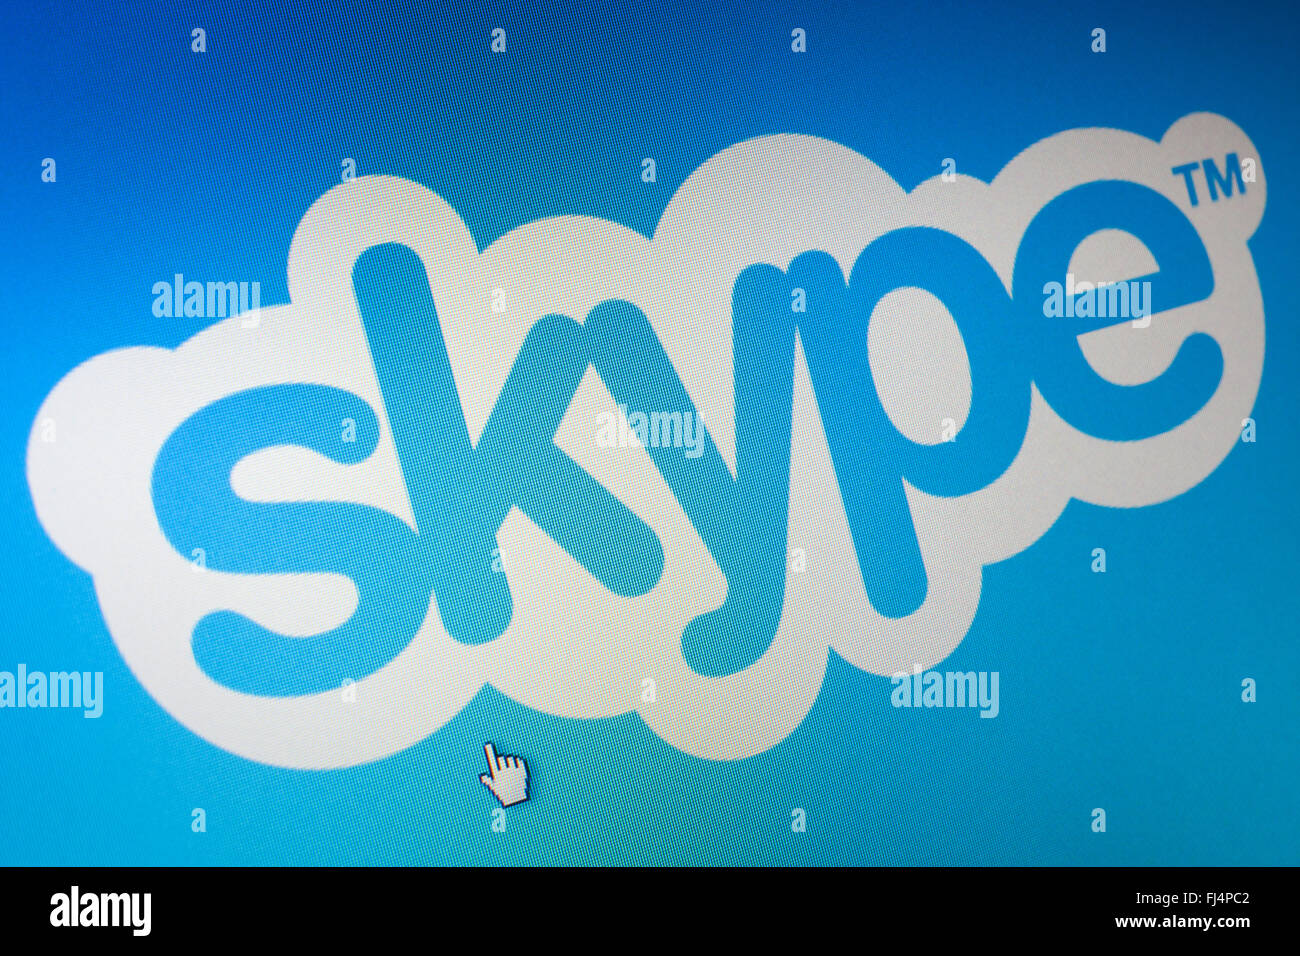 WIELICZKA, POLEN - 4. JUNI 2014. Skype-Logo auf dem Computerbildschirm. Skype ist eine kostenlose VoIP-Dienst. Stockfoto